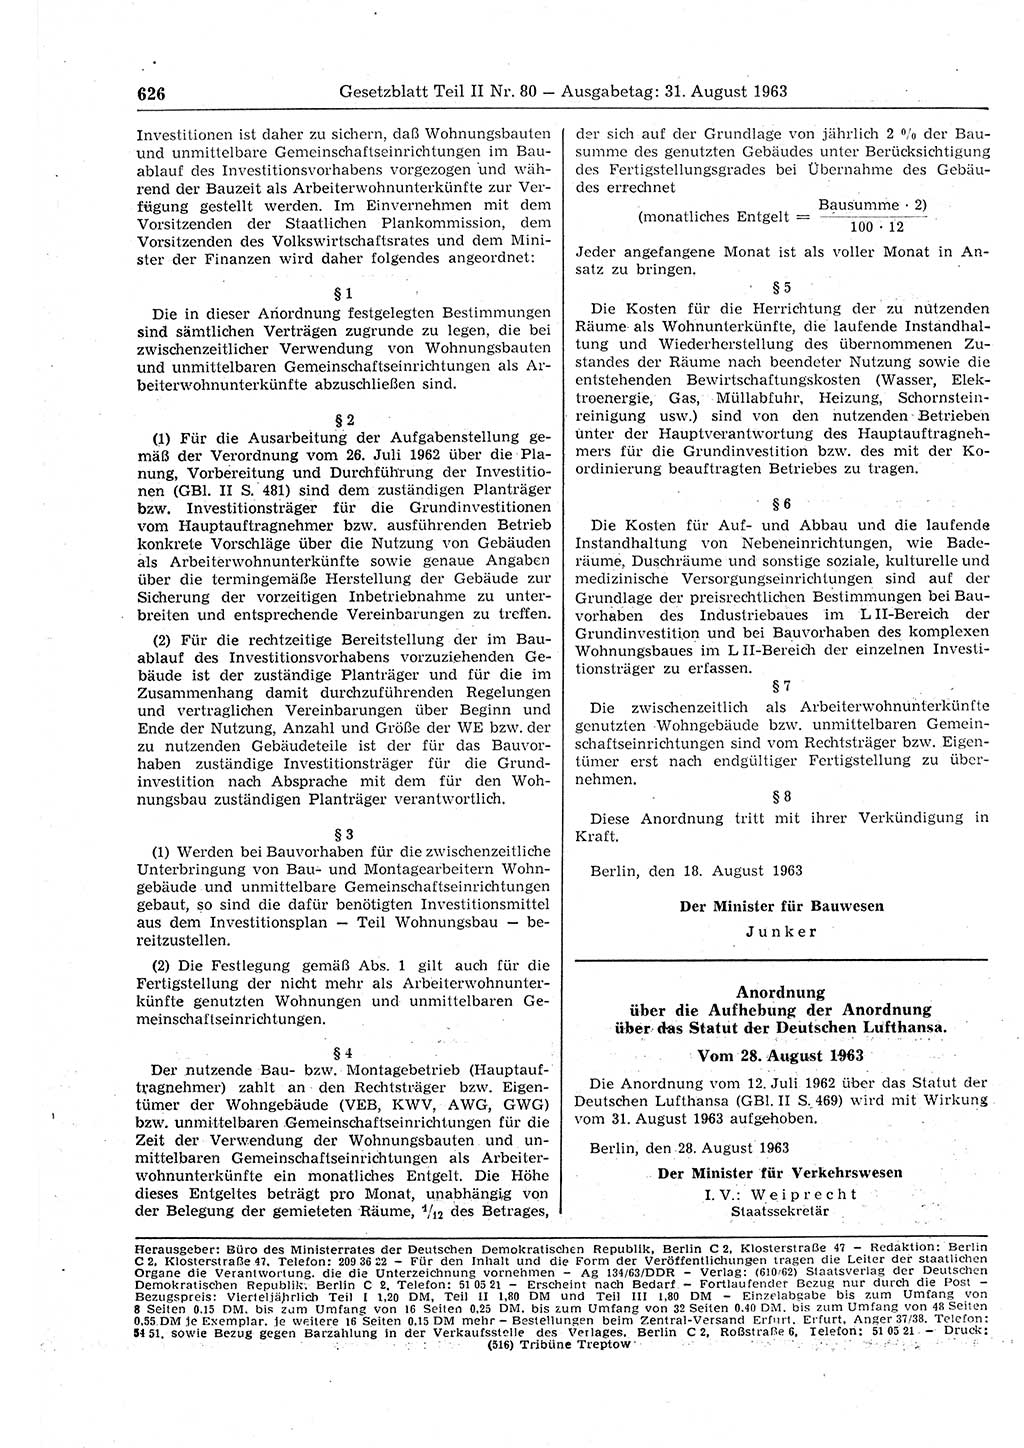 Gesetzblatt (GBl.) der Deutschen Demokratischen Republik (DDR) Teil ⅠⅠ 1963, Seite 626 (GBl. DDR ⅠⅠ 1963, S. 626)